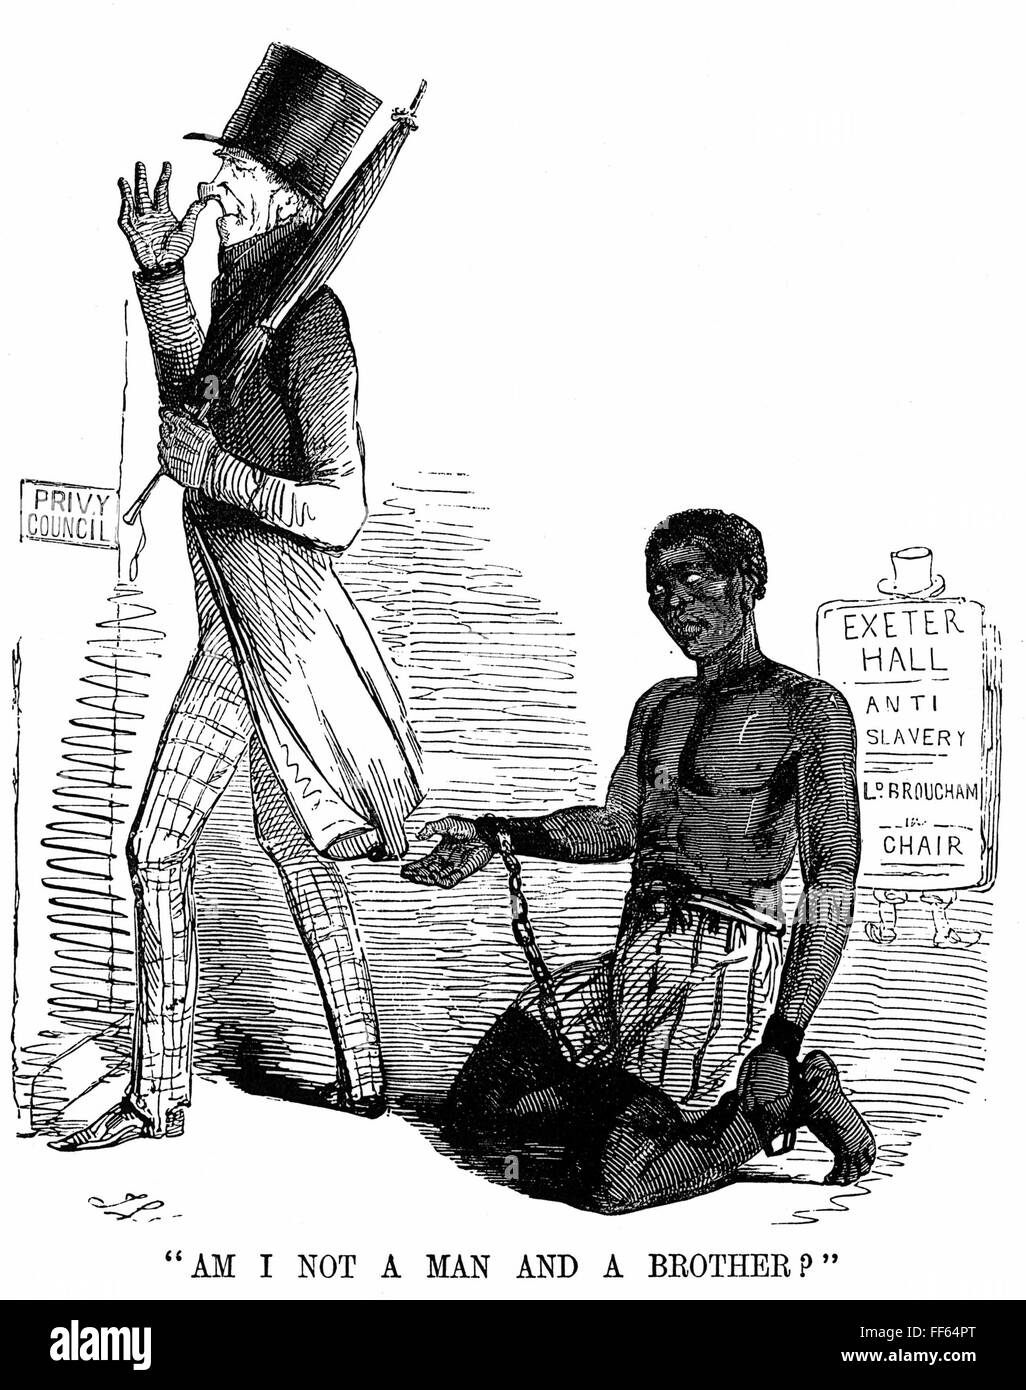 Caricatura: la esclavitud, de 1844. /N'No soy un hombre y un hermano?" Caricatura de 1844, por John Leech de "Punch". Foto de stock